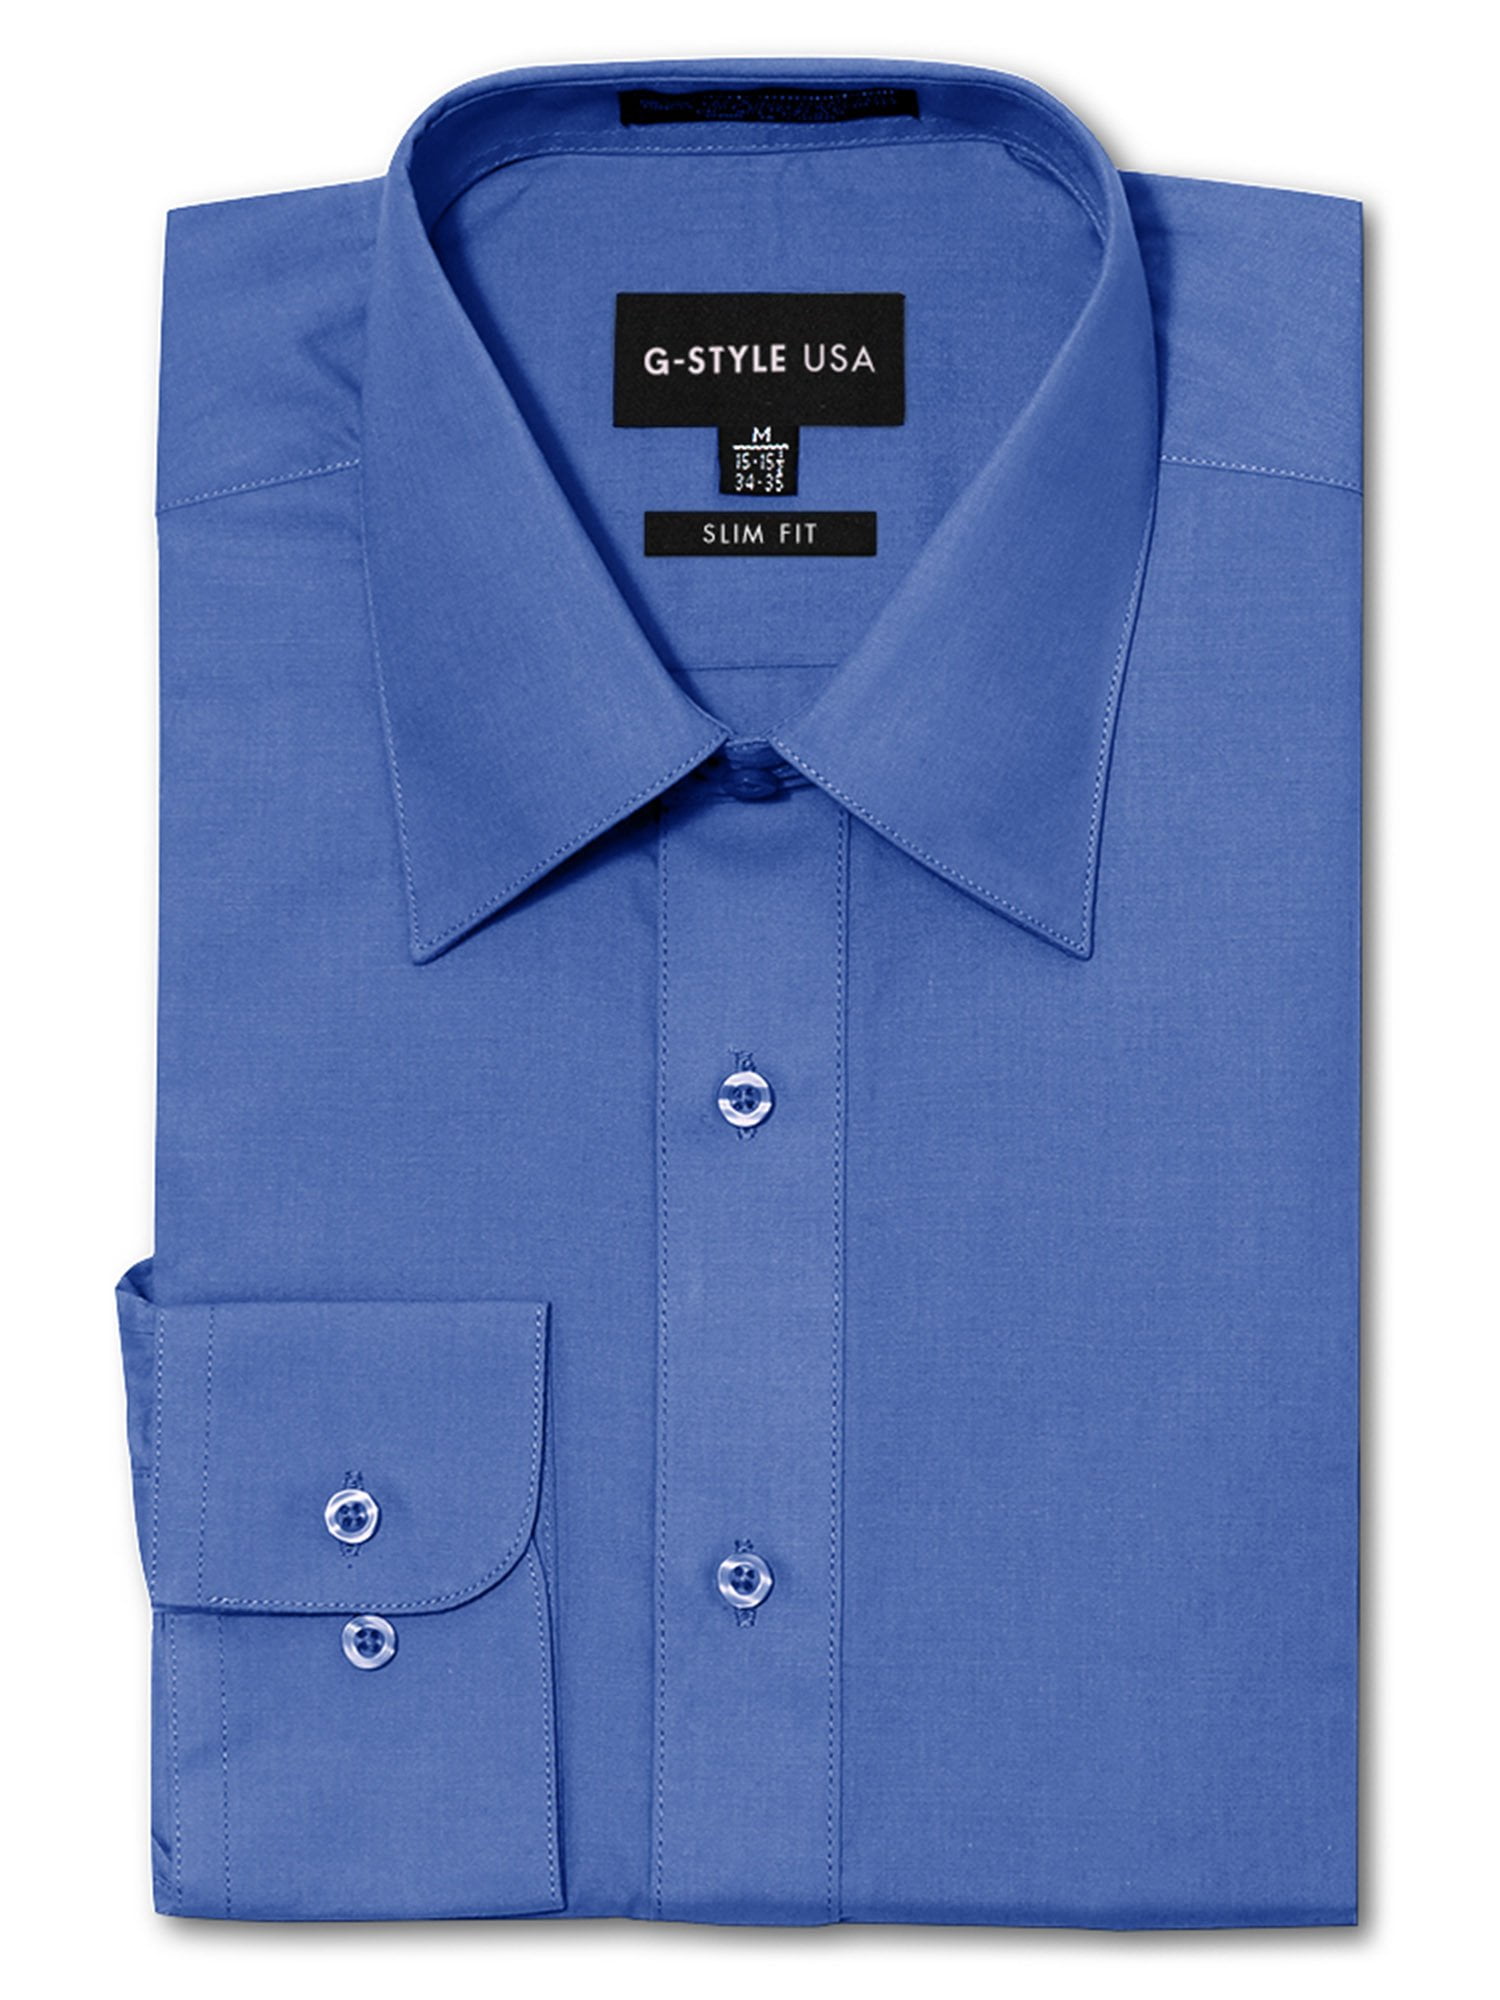 18.5 New Men's Stafford Travel Performance Super Dress Shirt X-Tall Fit Blue 18 